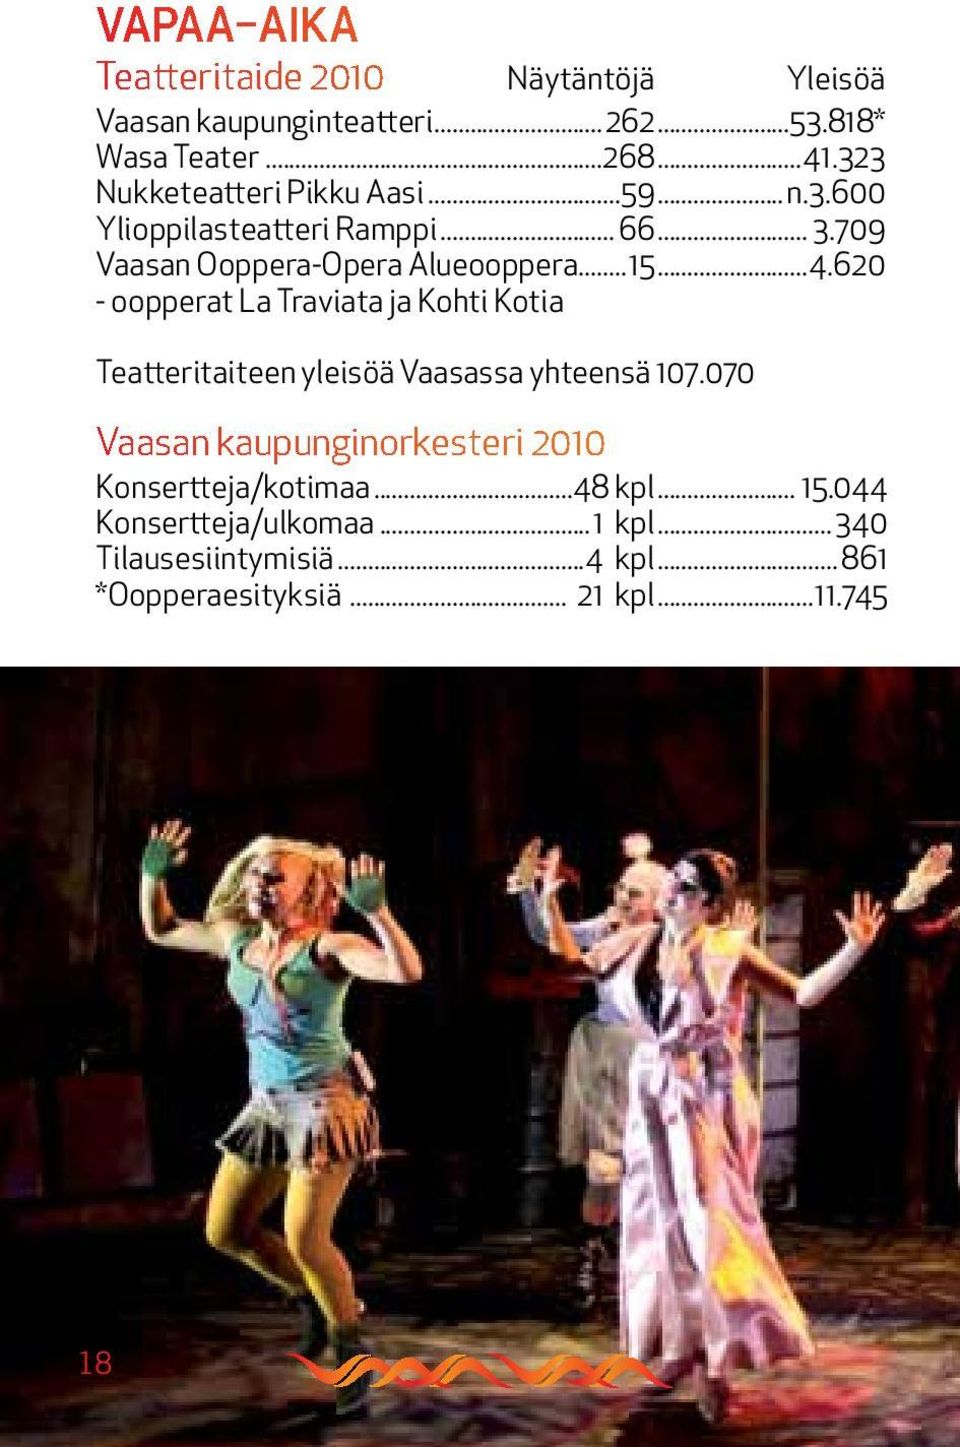 620 - oopperat La Traviata ja Kohti Kotia Teatteritaiteen yleisöä Vaasassa yhteensä. 107.